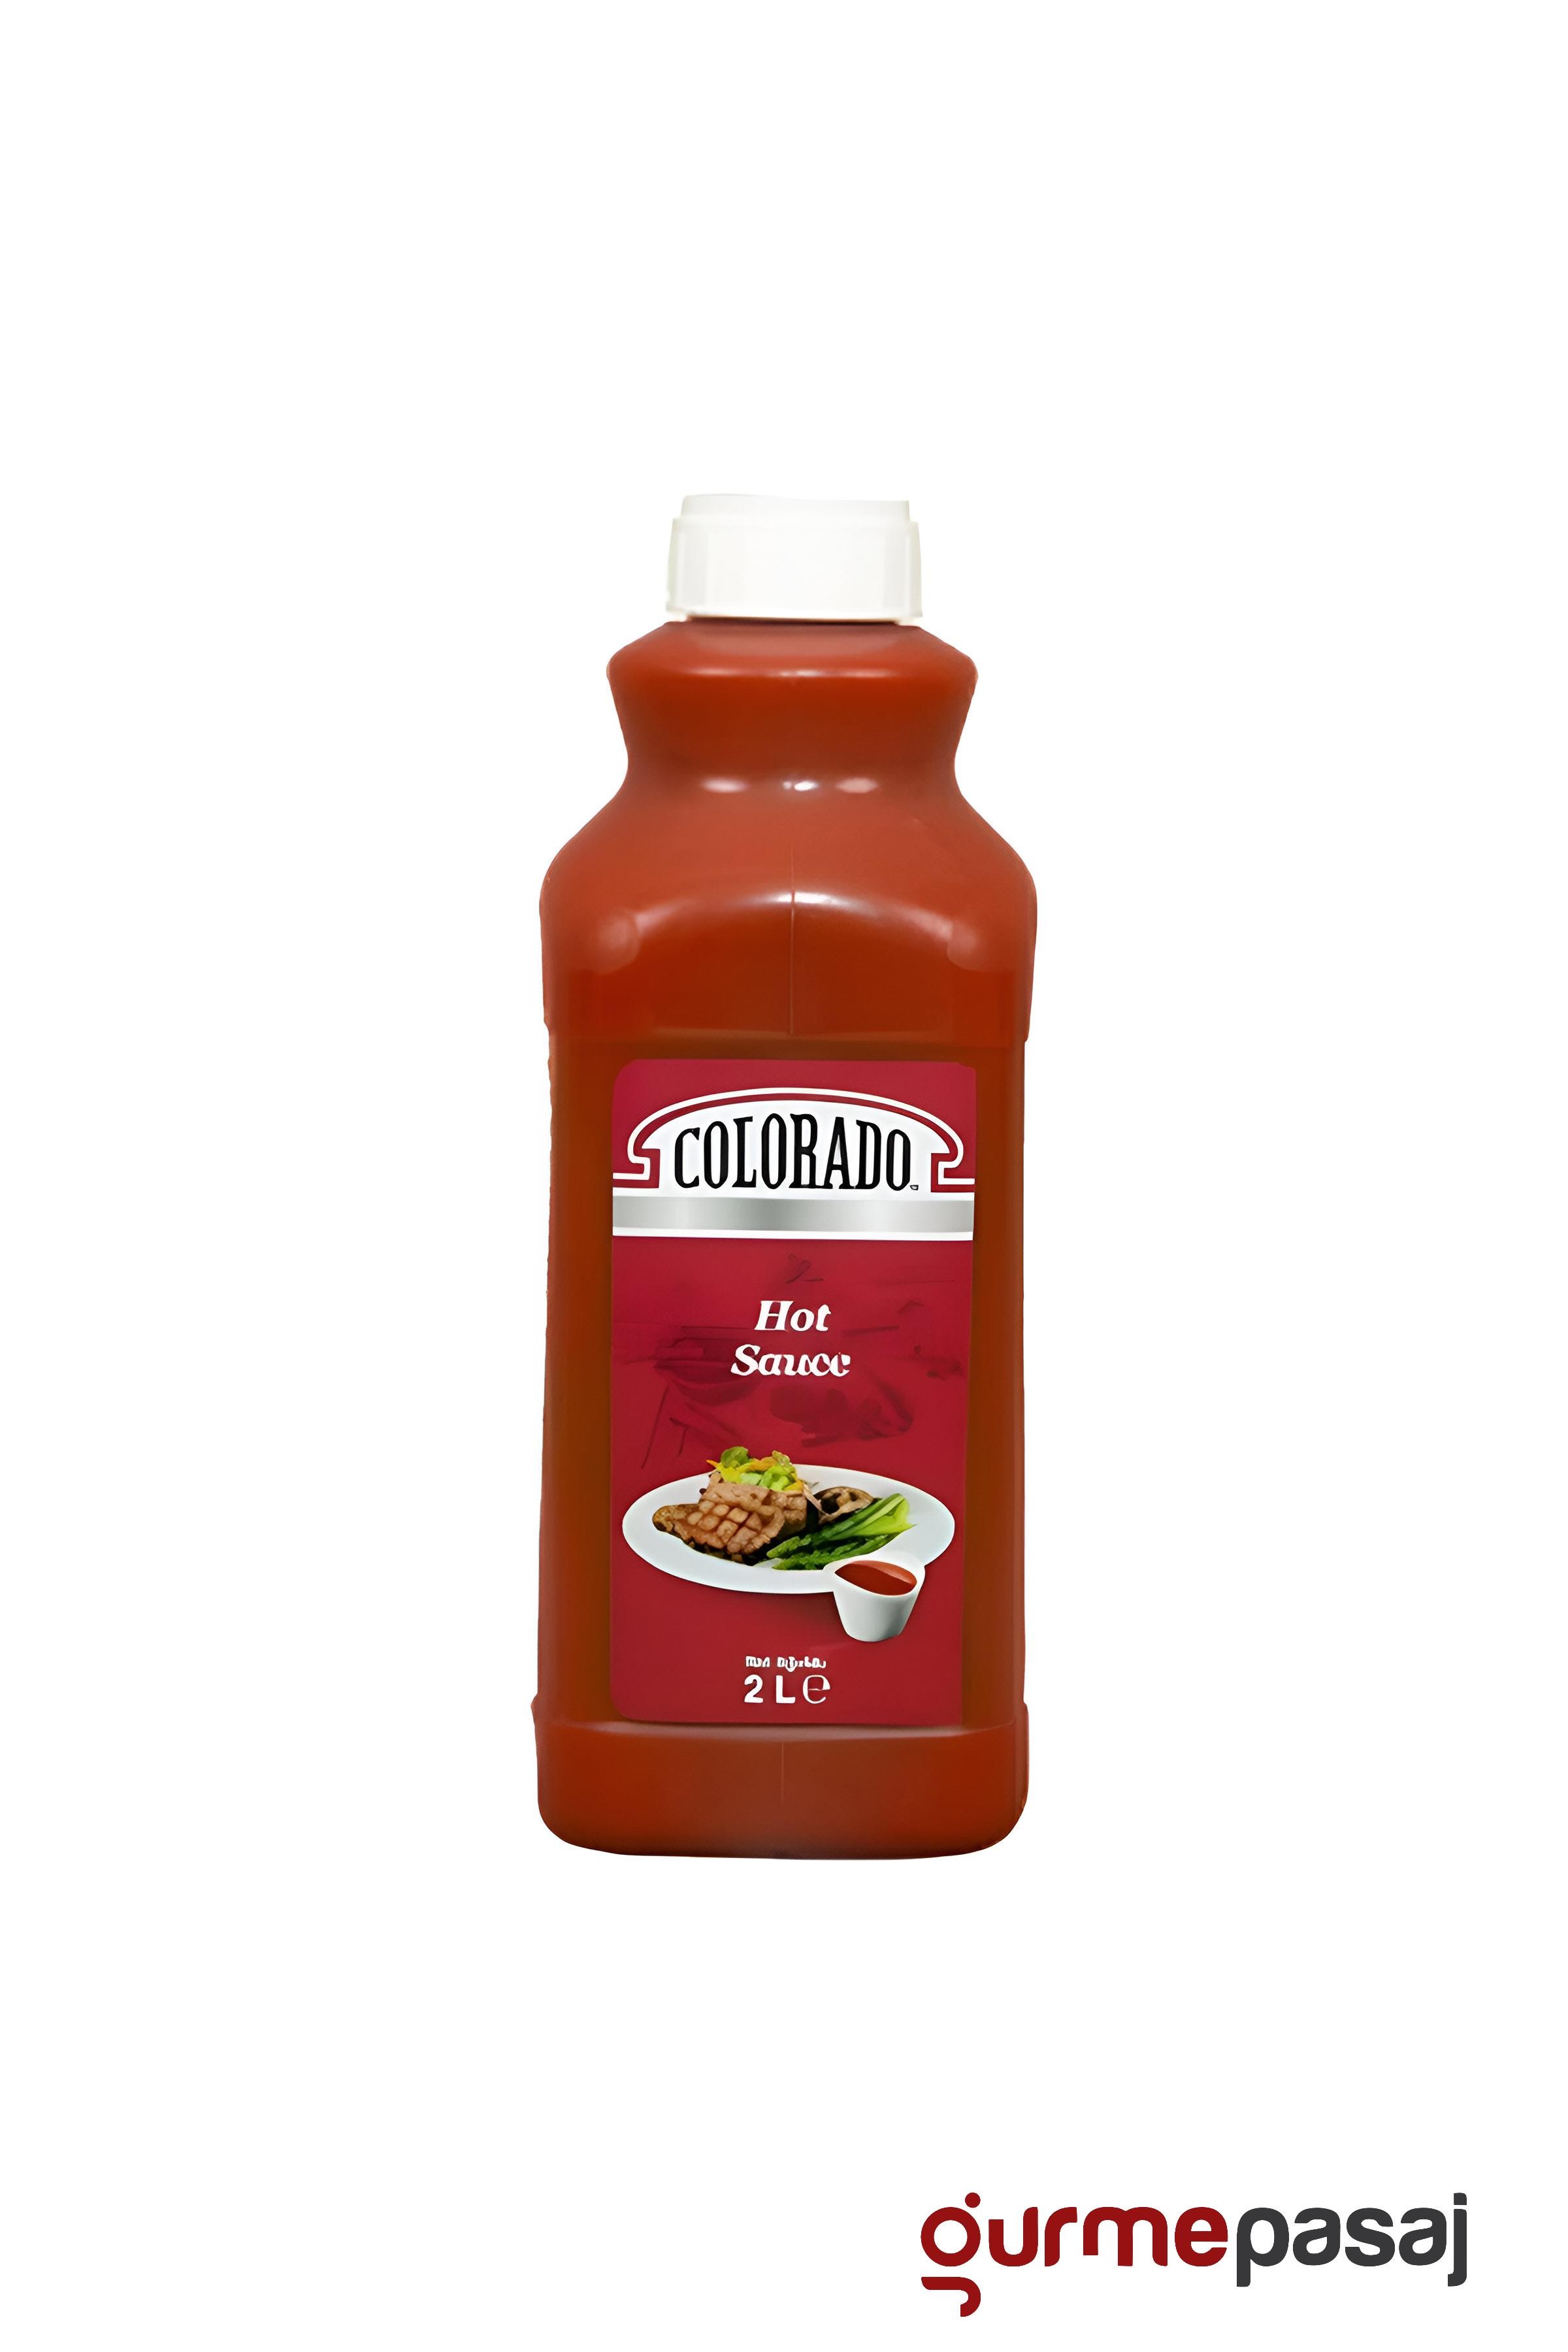 Colorado Acısso (Hot Sauce) 2150 G x 4 Adet